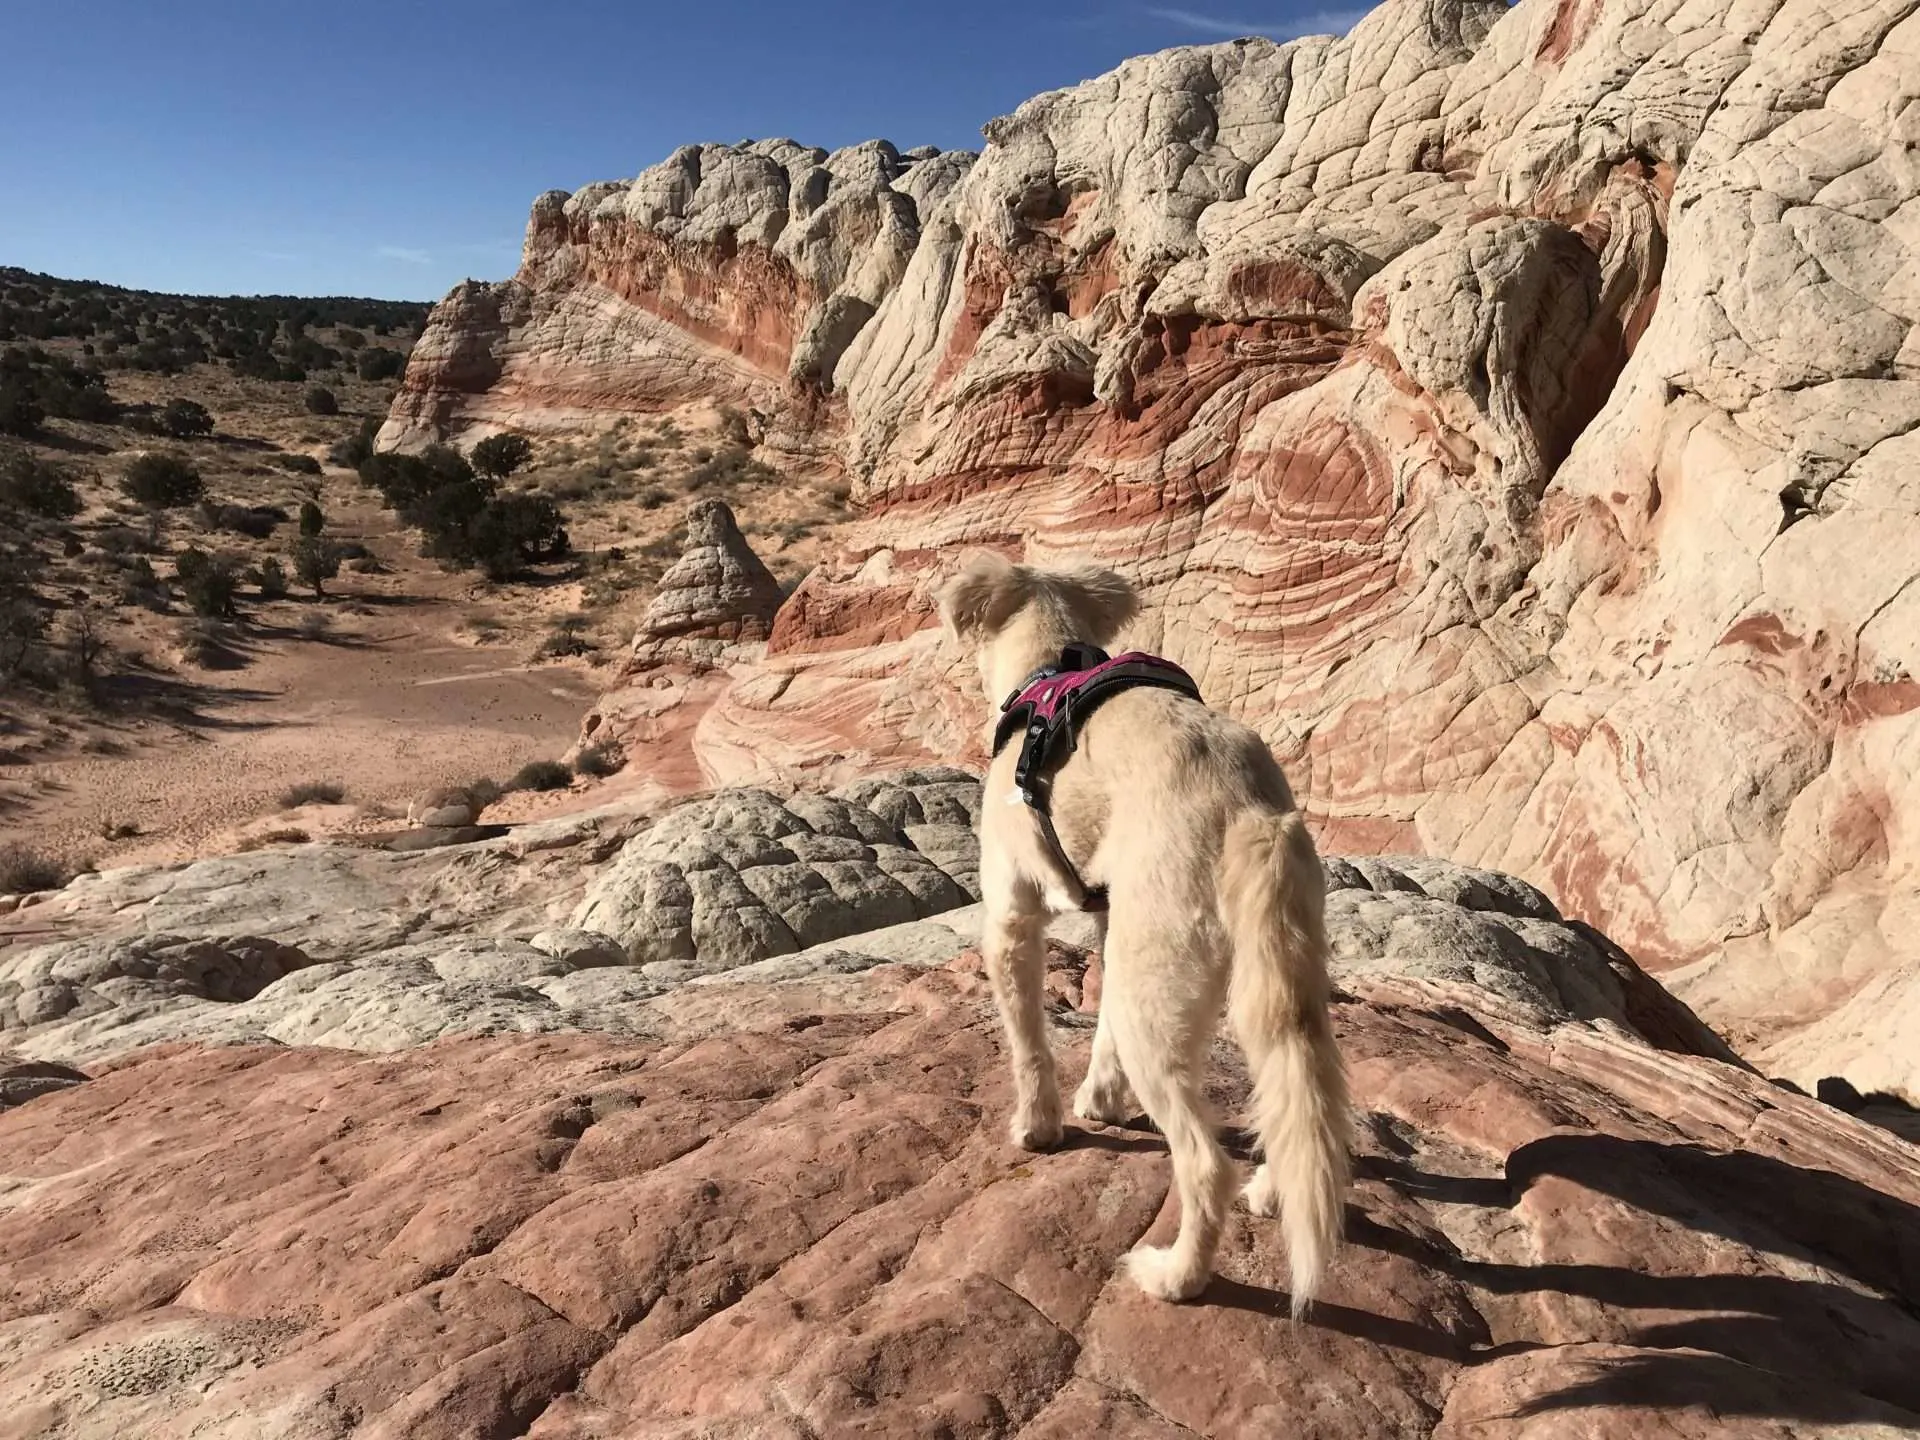 Bella hiking in Arizona